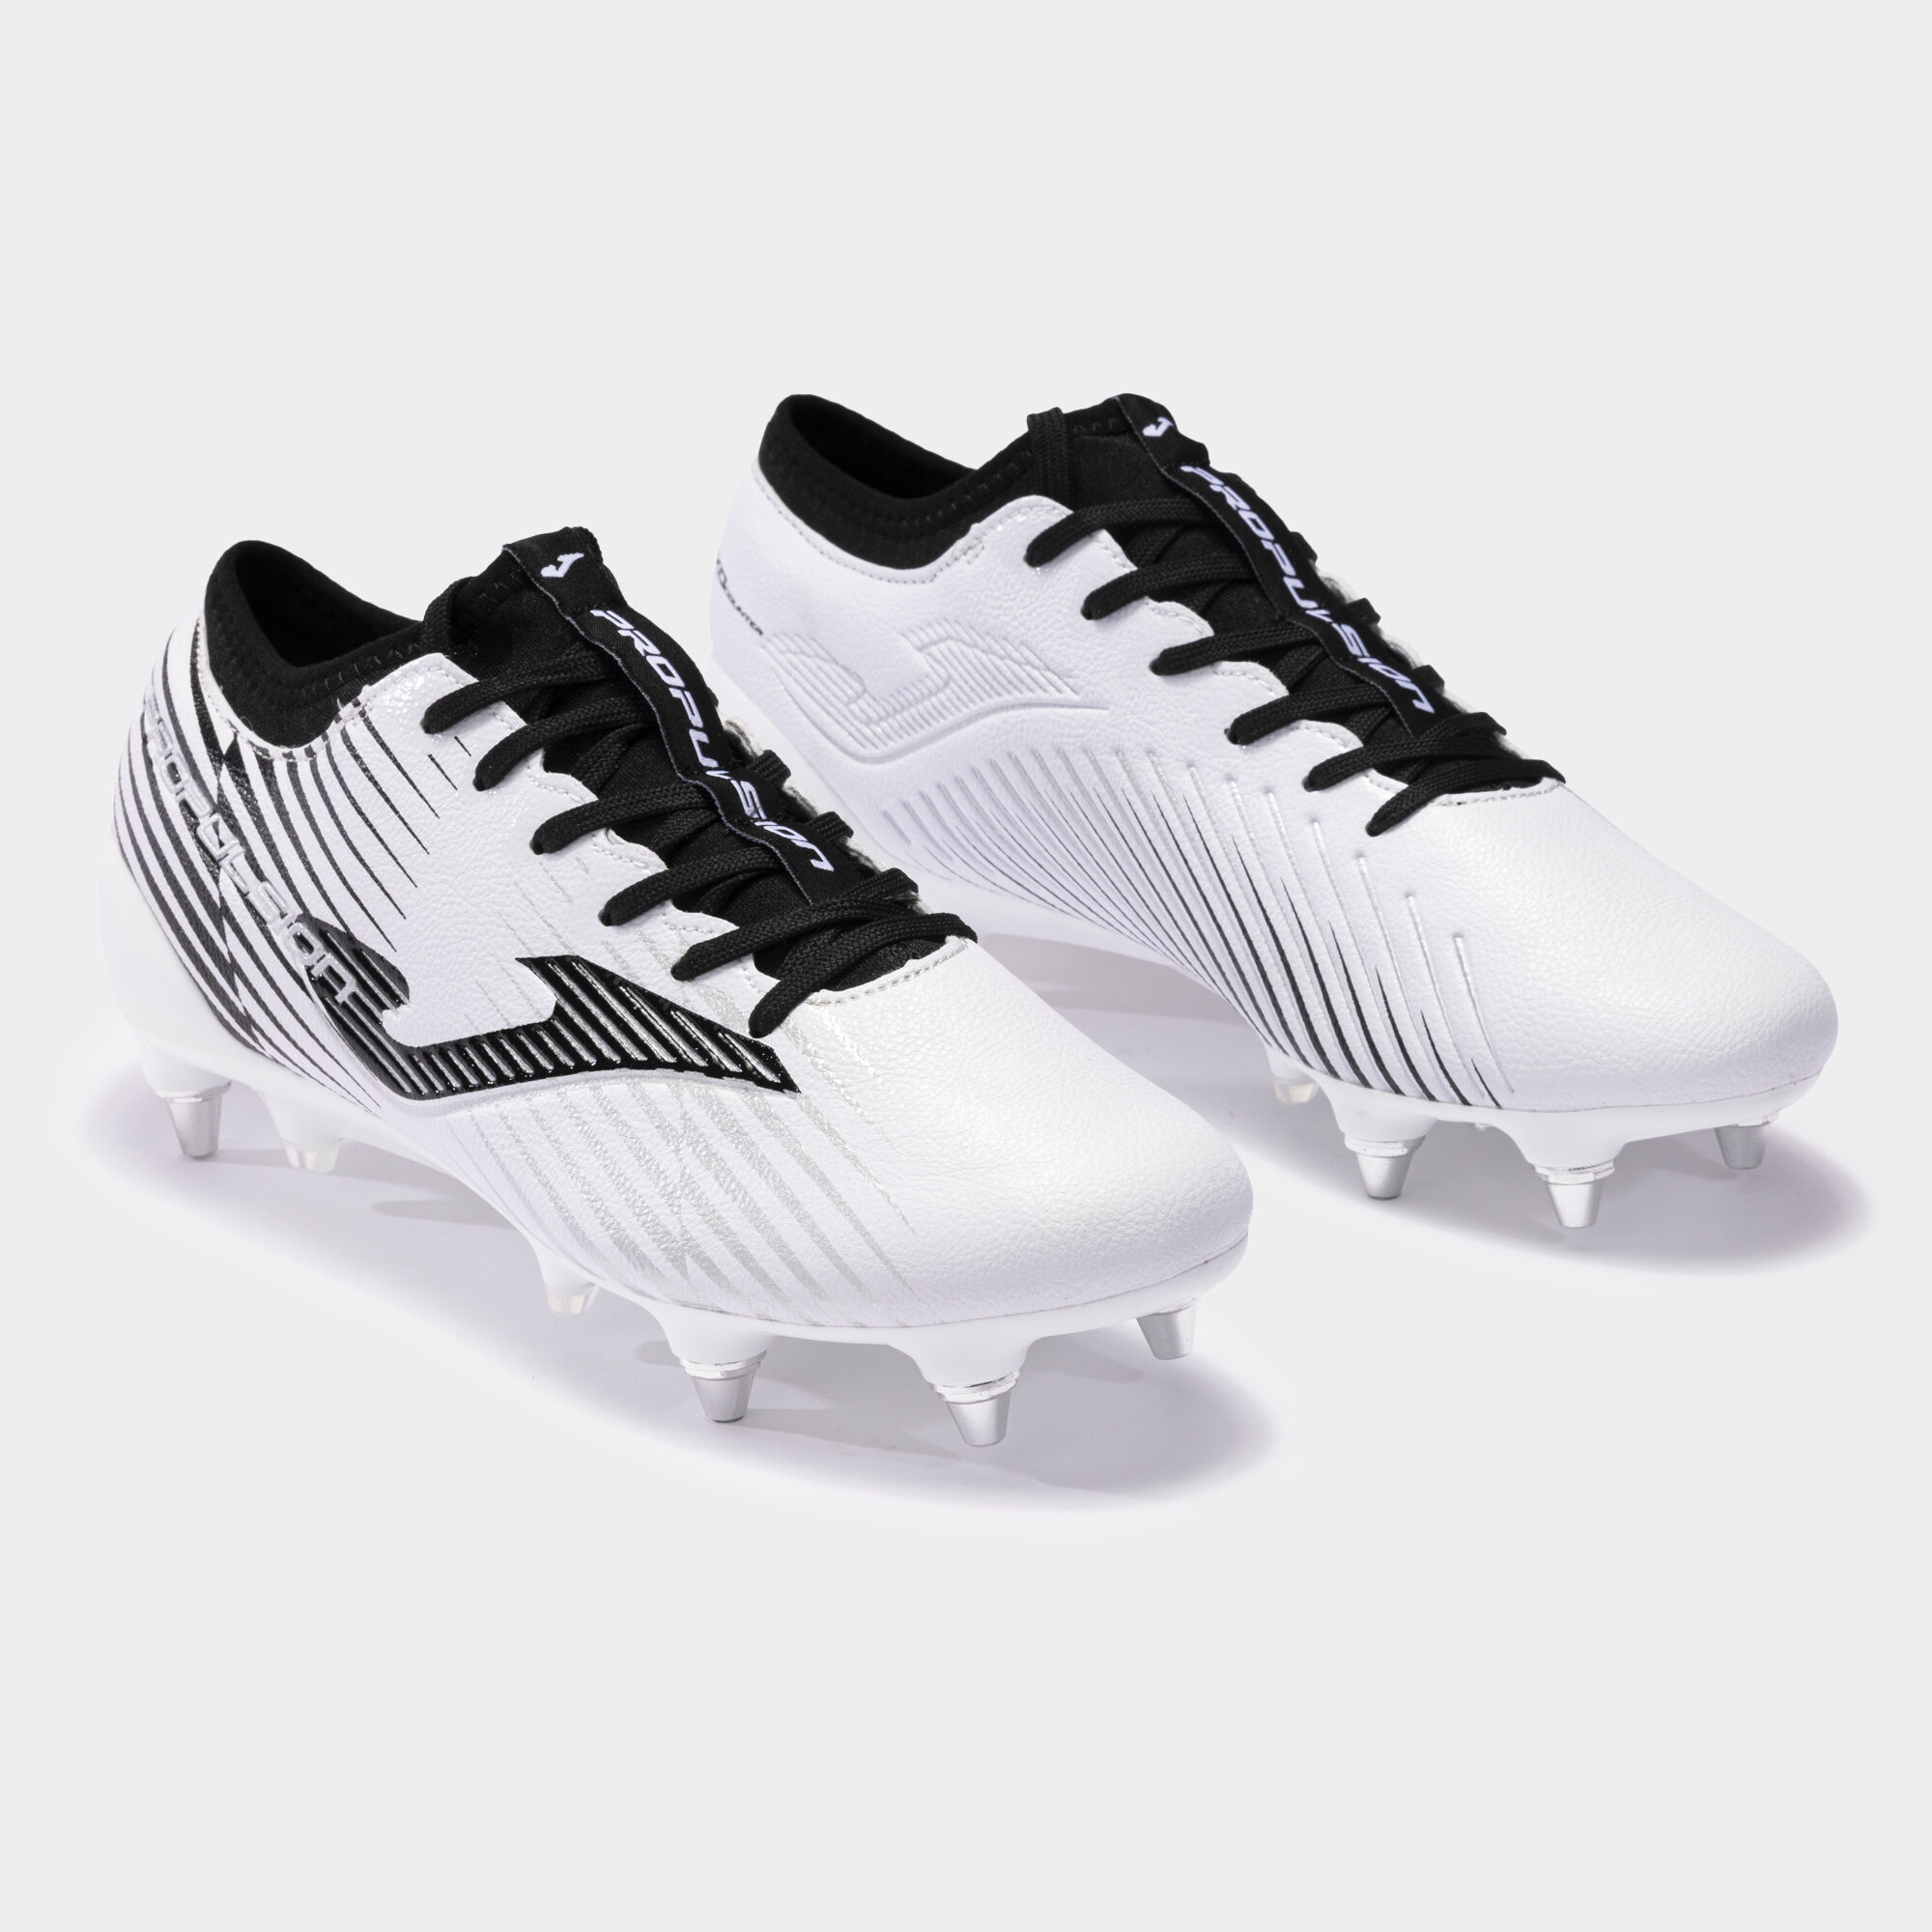 Buty piłkarskie Propulsion Cup 23 miękkie podłoże SG bialy czarny